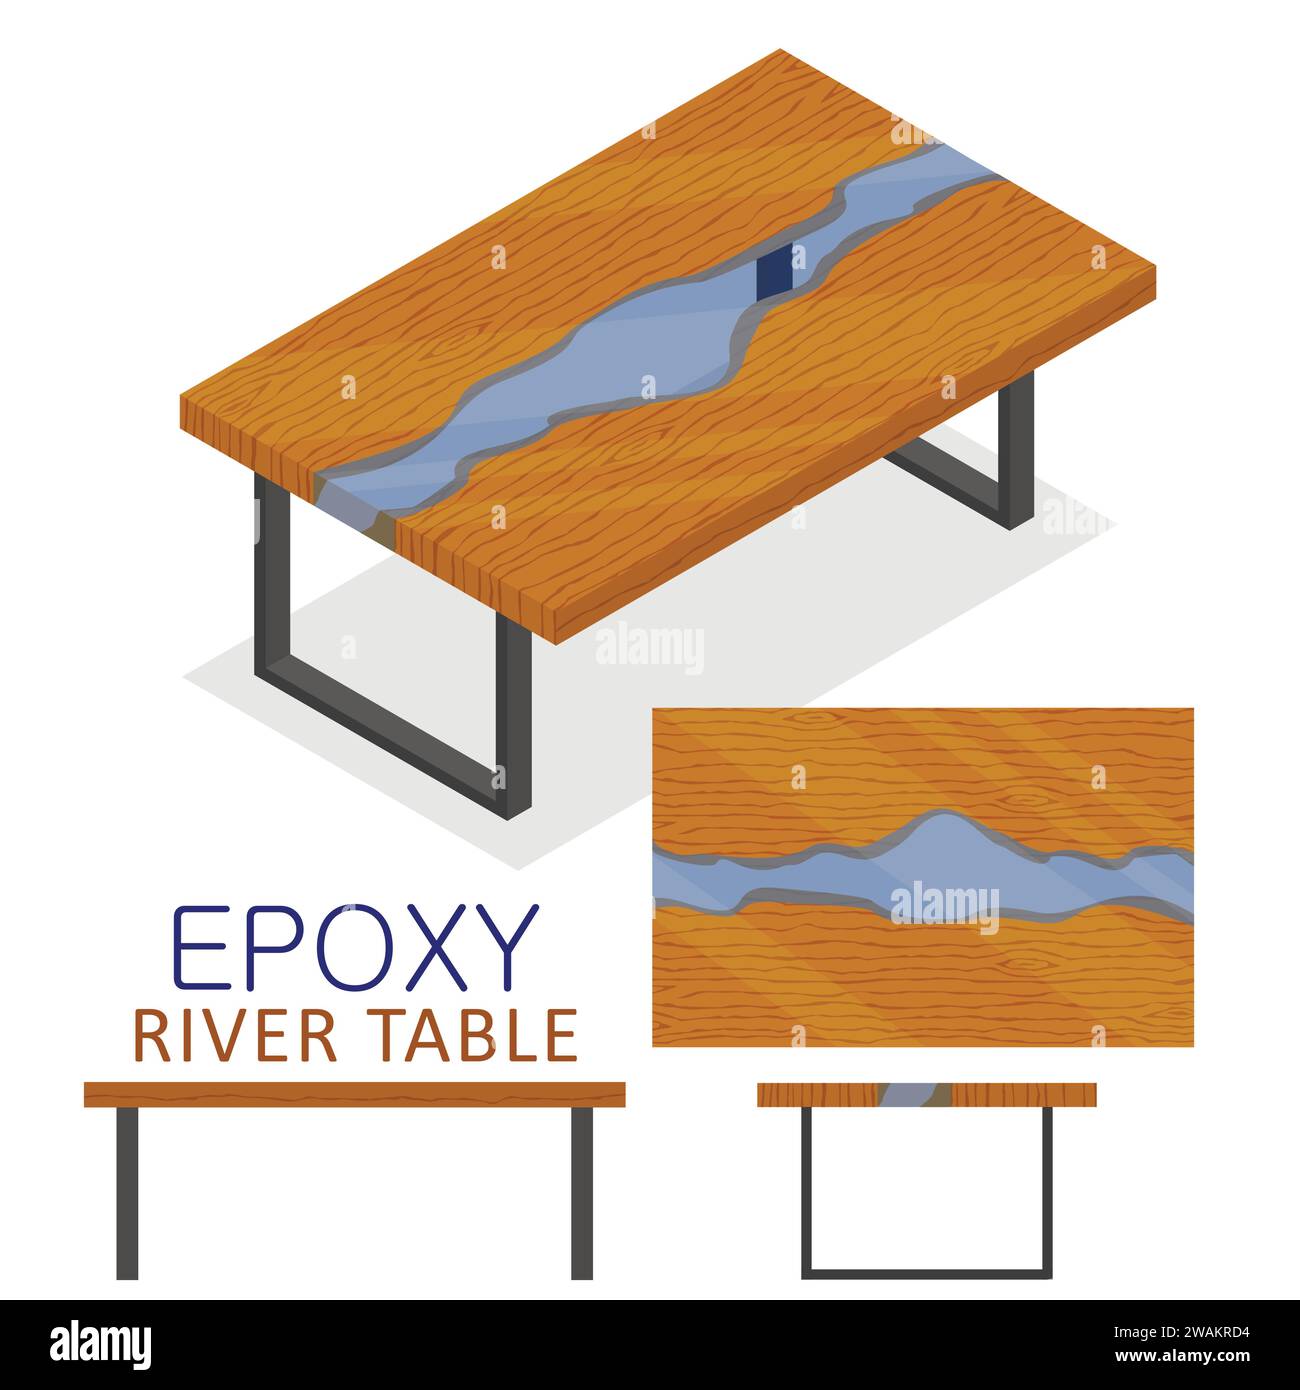 Portabagagli in legno e resina epossidica trasparente. Mobili da tavolo Isometric Epoxy River in stile loft isolato su sfondo bianco. Illustrazione vettoriale Illustrazione Vettoriale